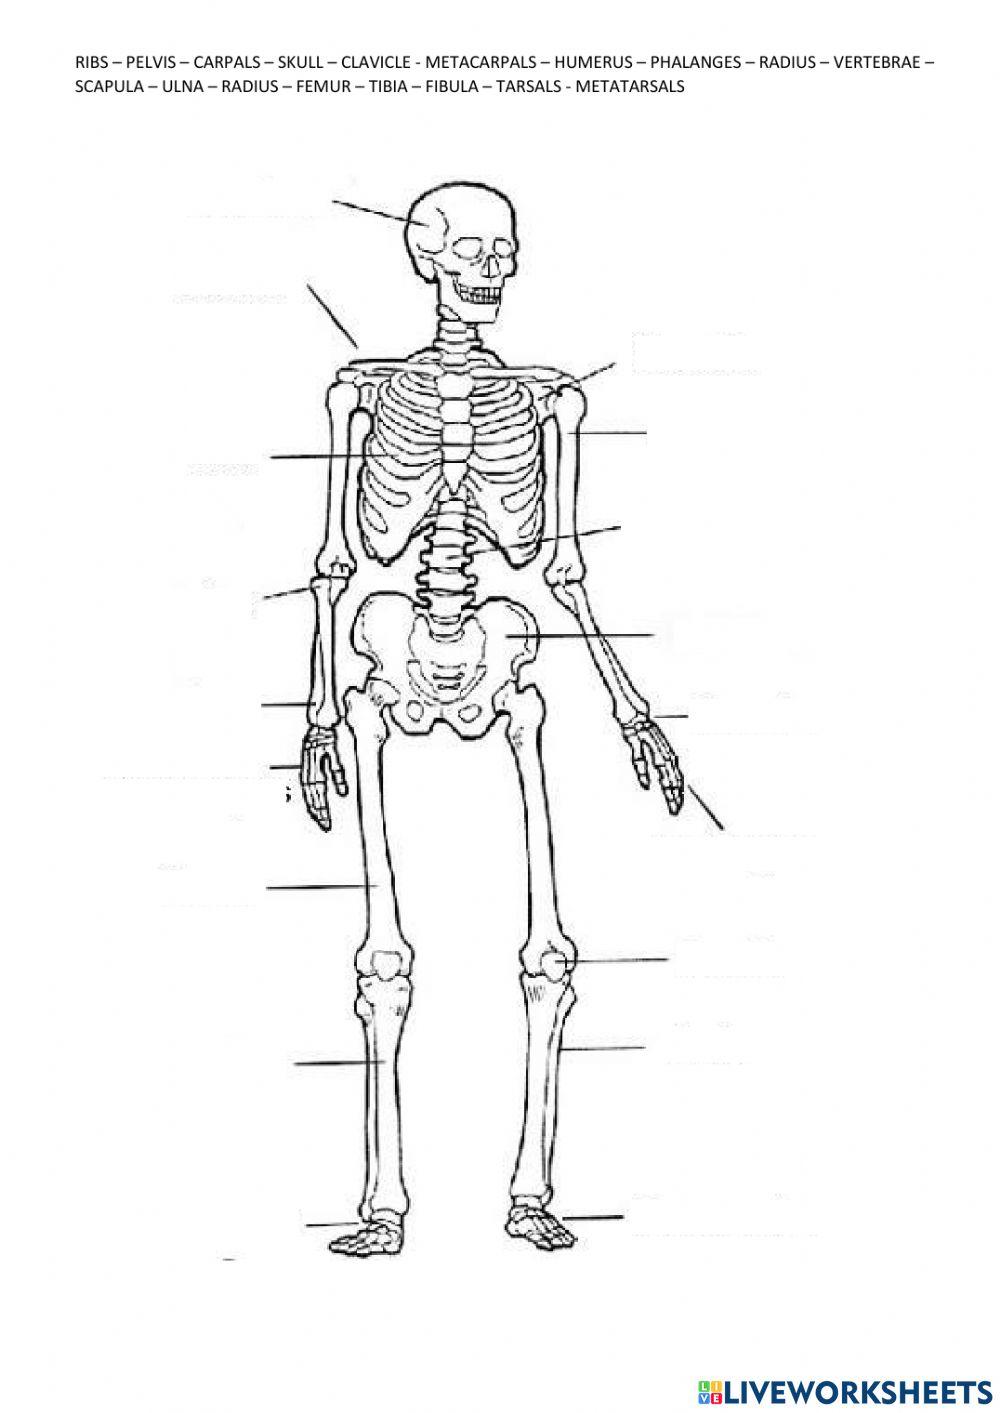 Skeletal system - Bones